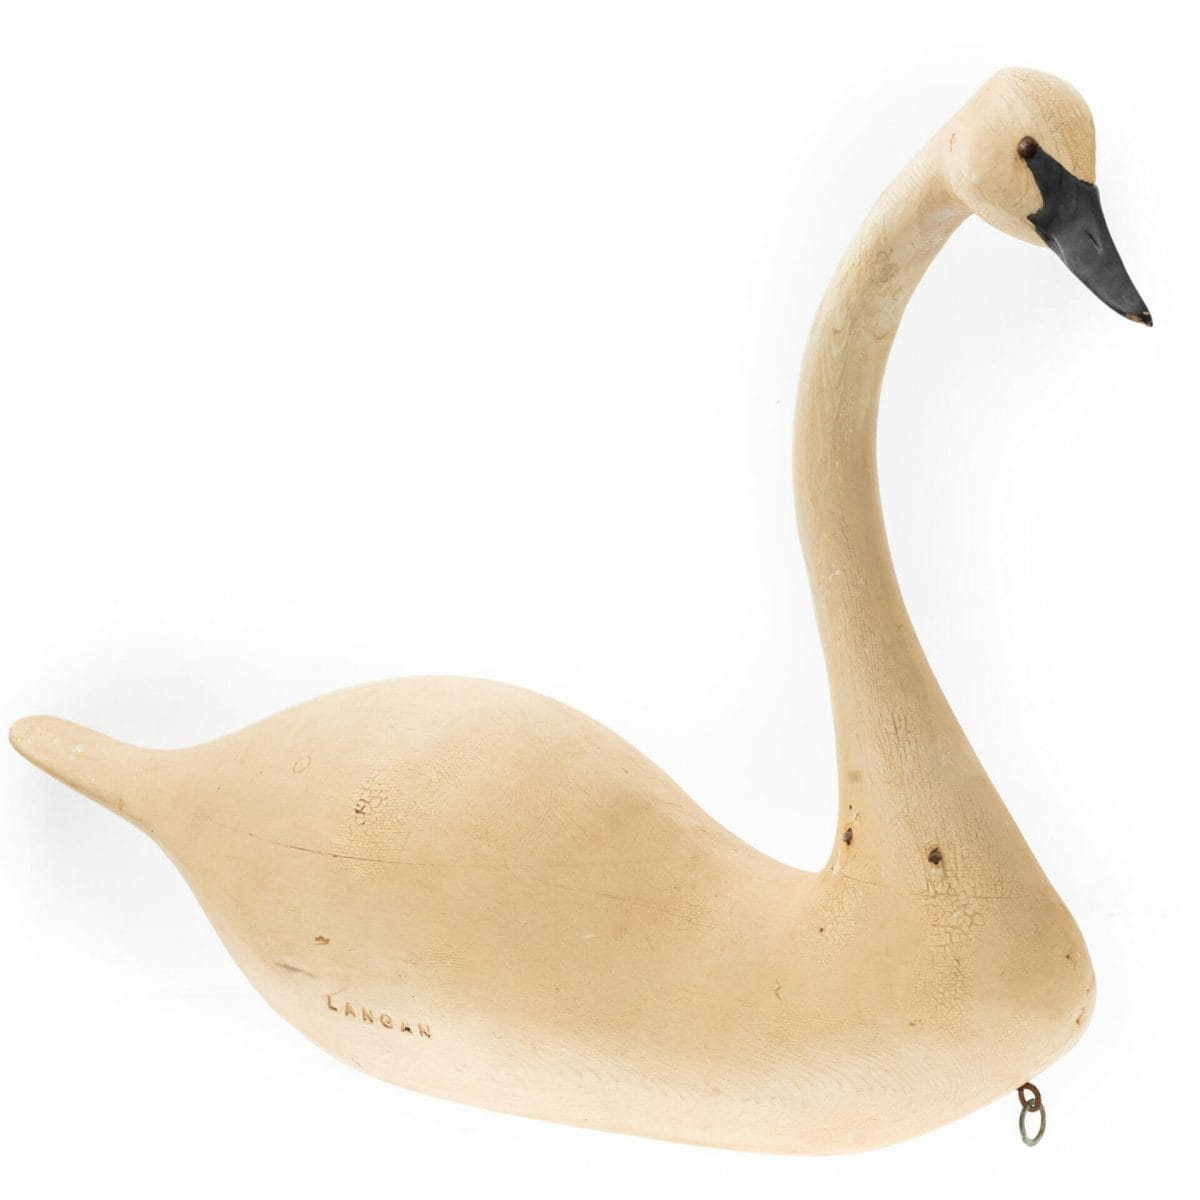 folk art swan bird decoy